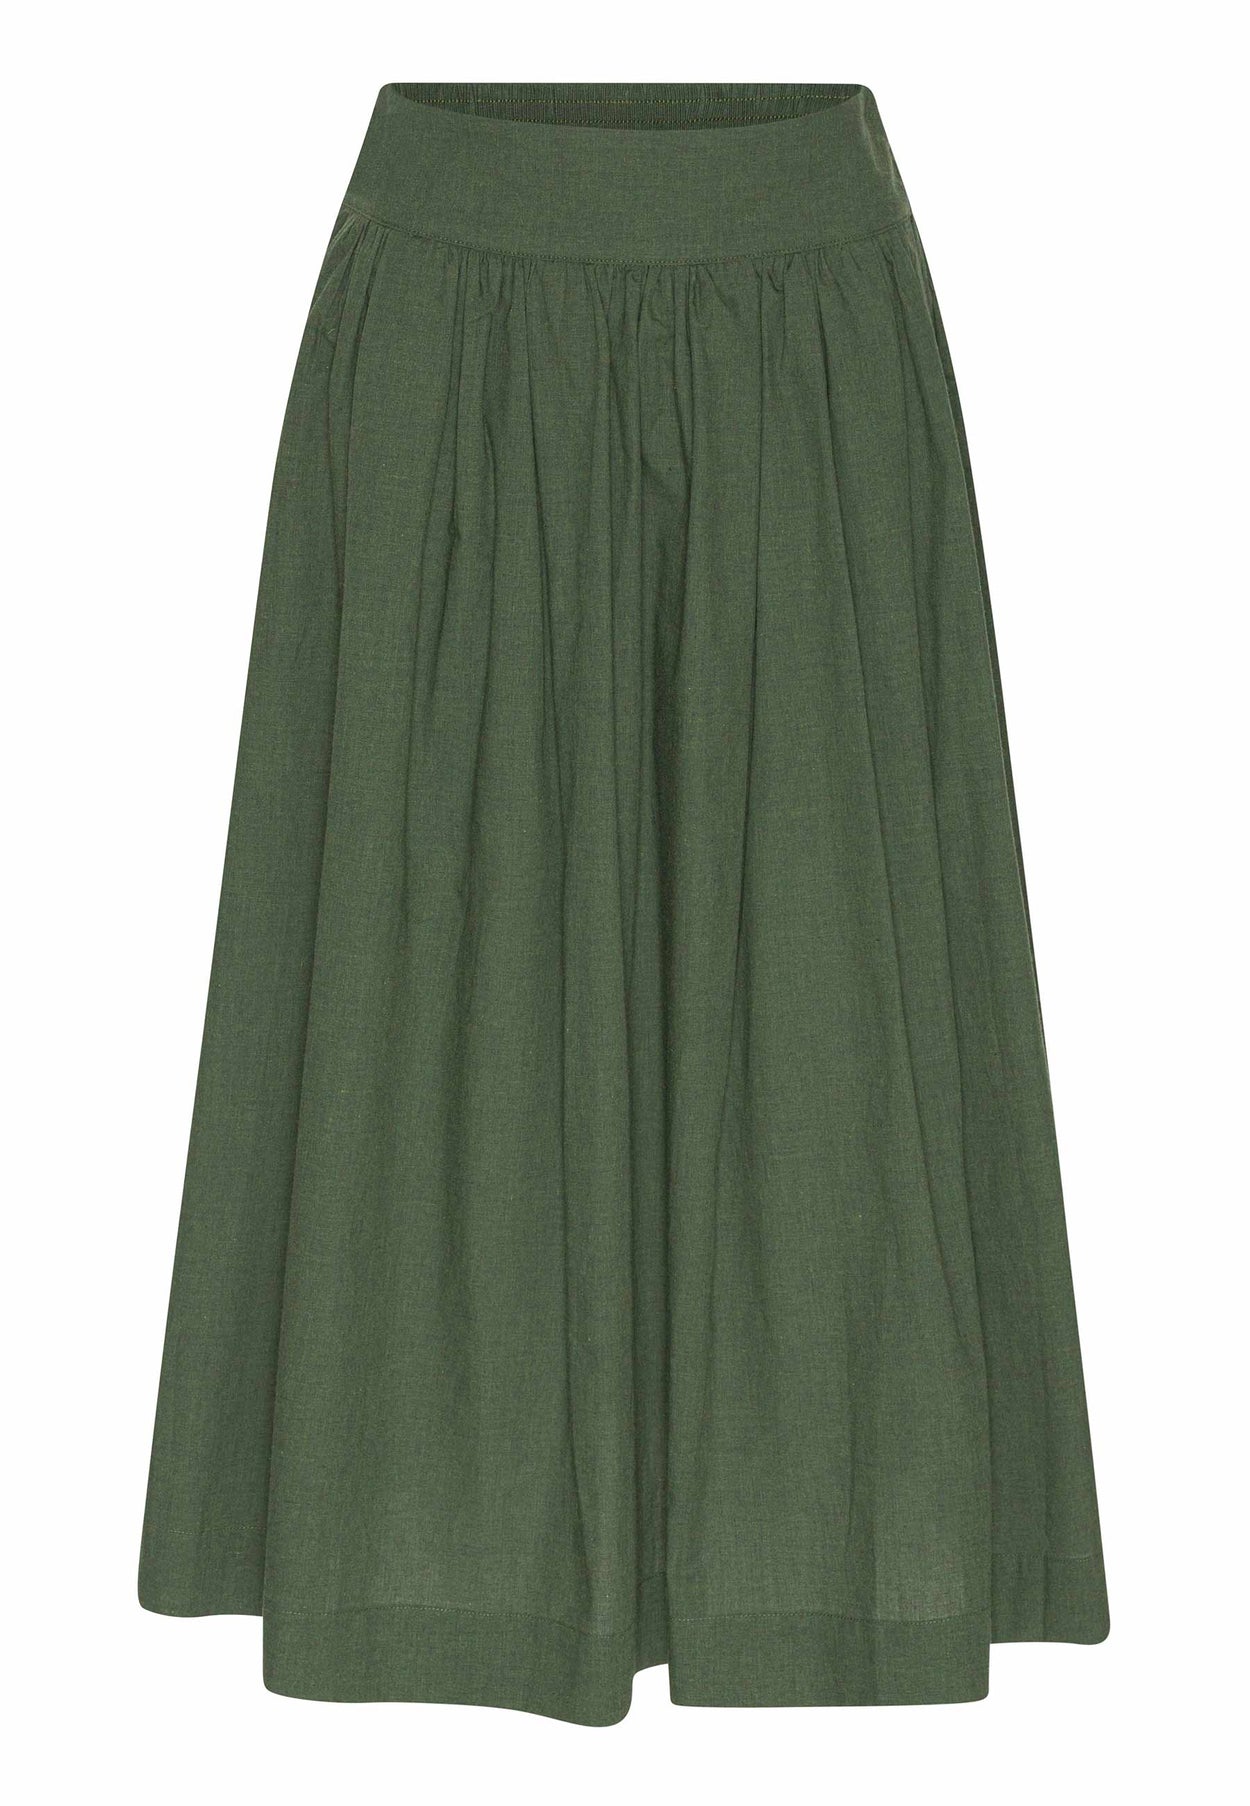 GROBUND Mette nederdel - den lange i grøn melange